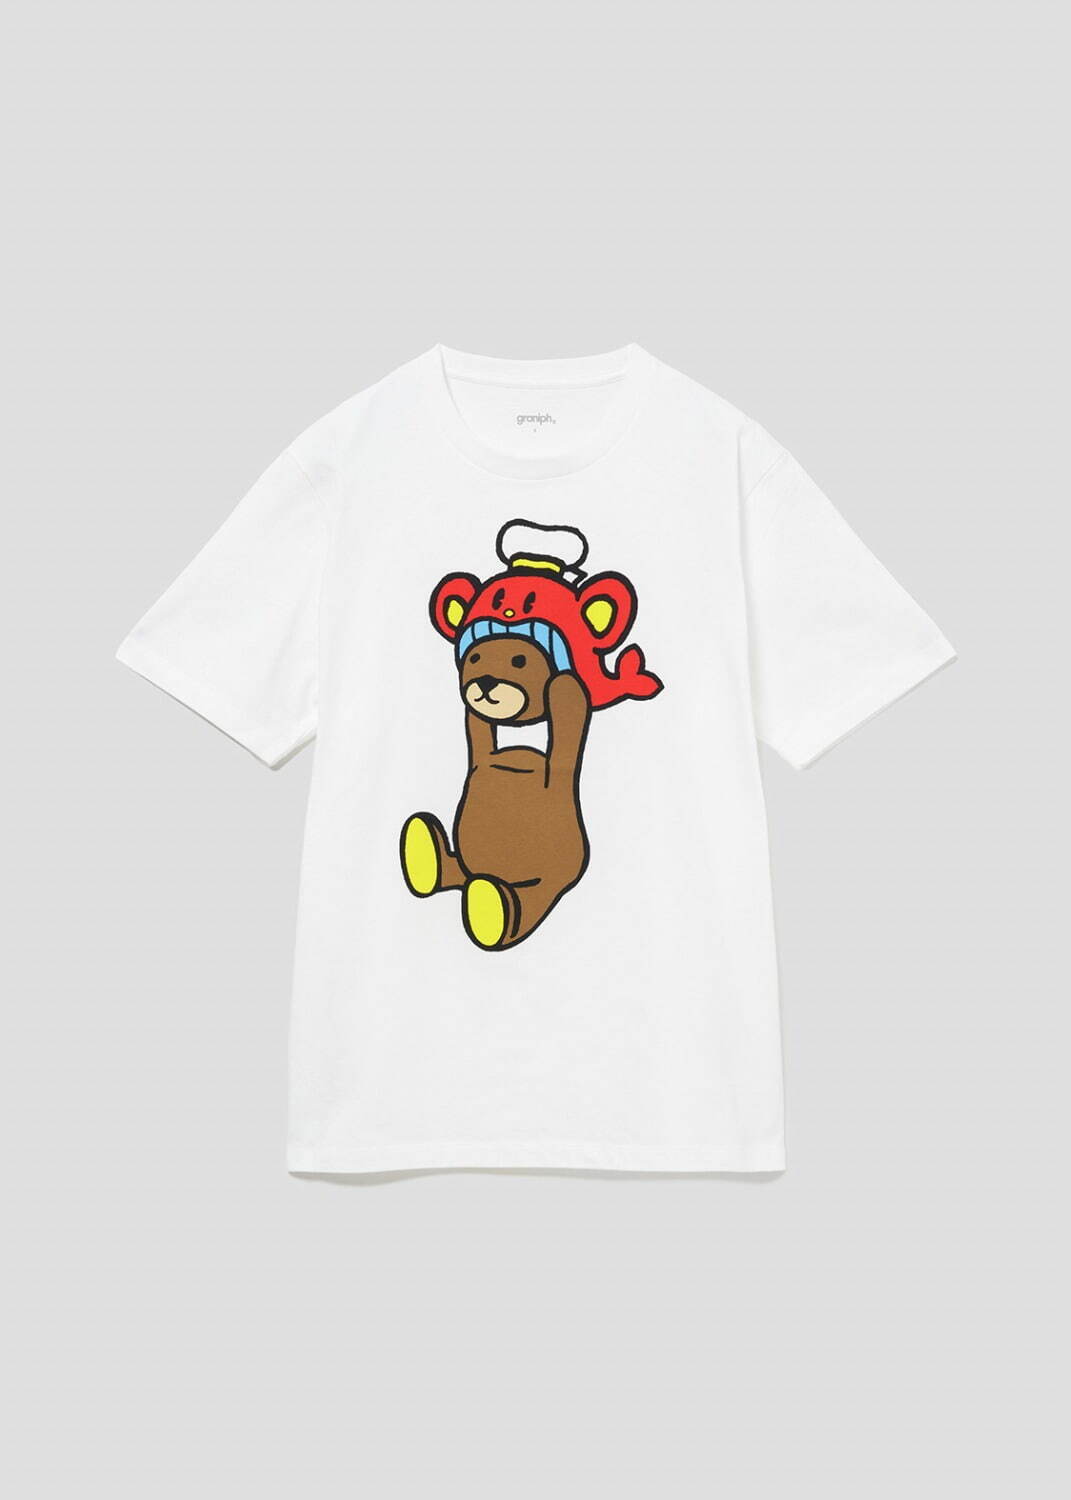 とと丸×コントロールベア(森永製菓)Tシャツ 3,500円